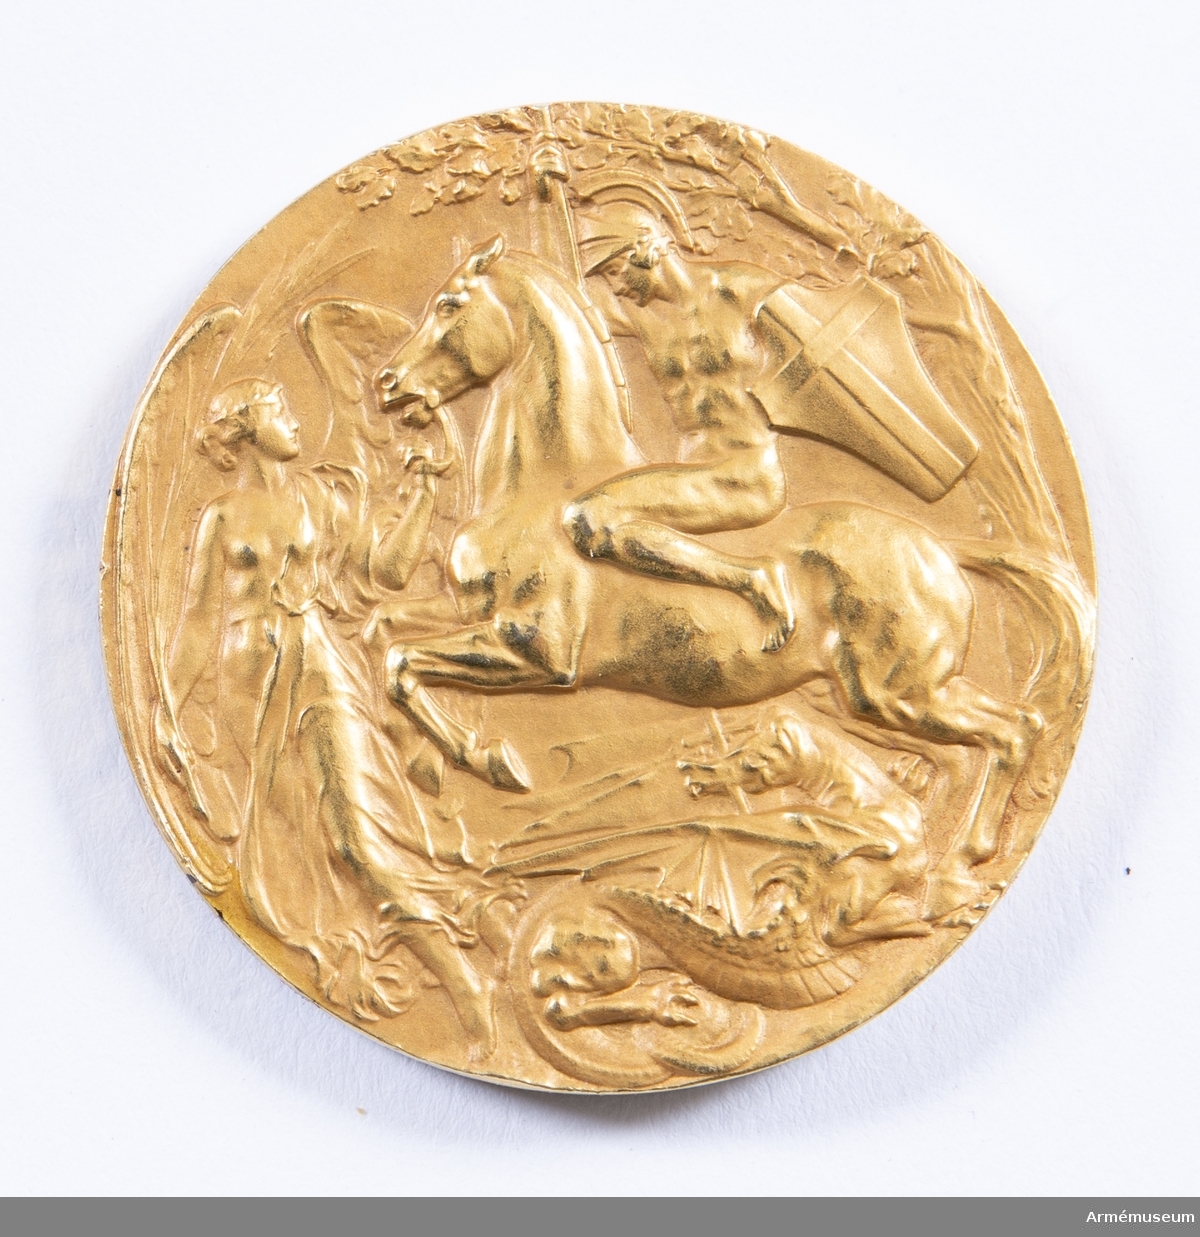 Grupp M II.
Guldmedalj vunnen av Oscar Gomer Swahn i löpande hjort, enkelskott, lag, OS 1908 i London.